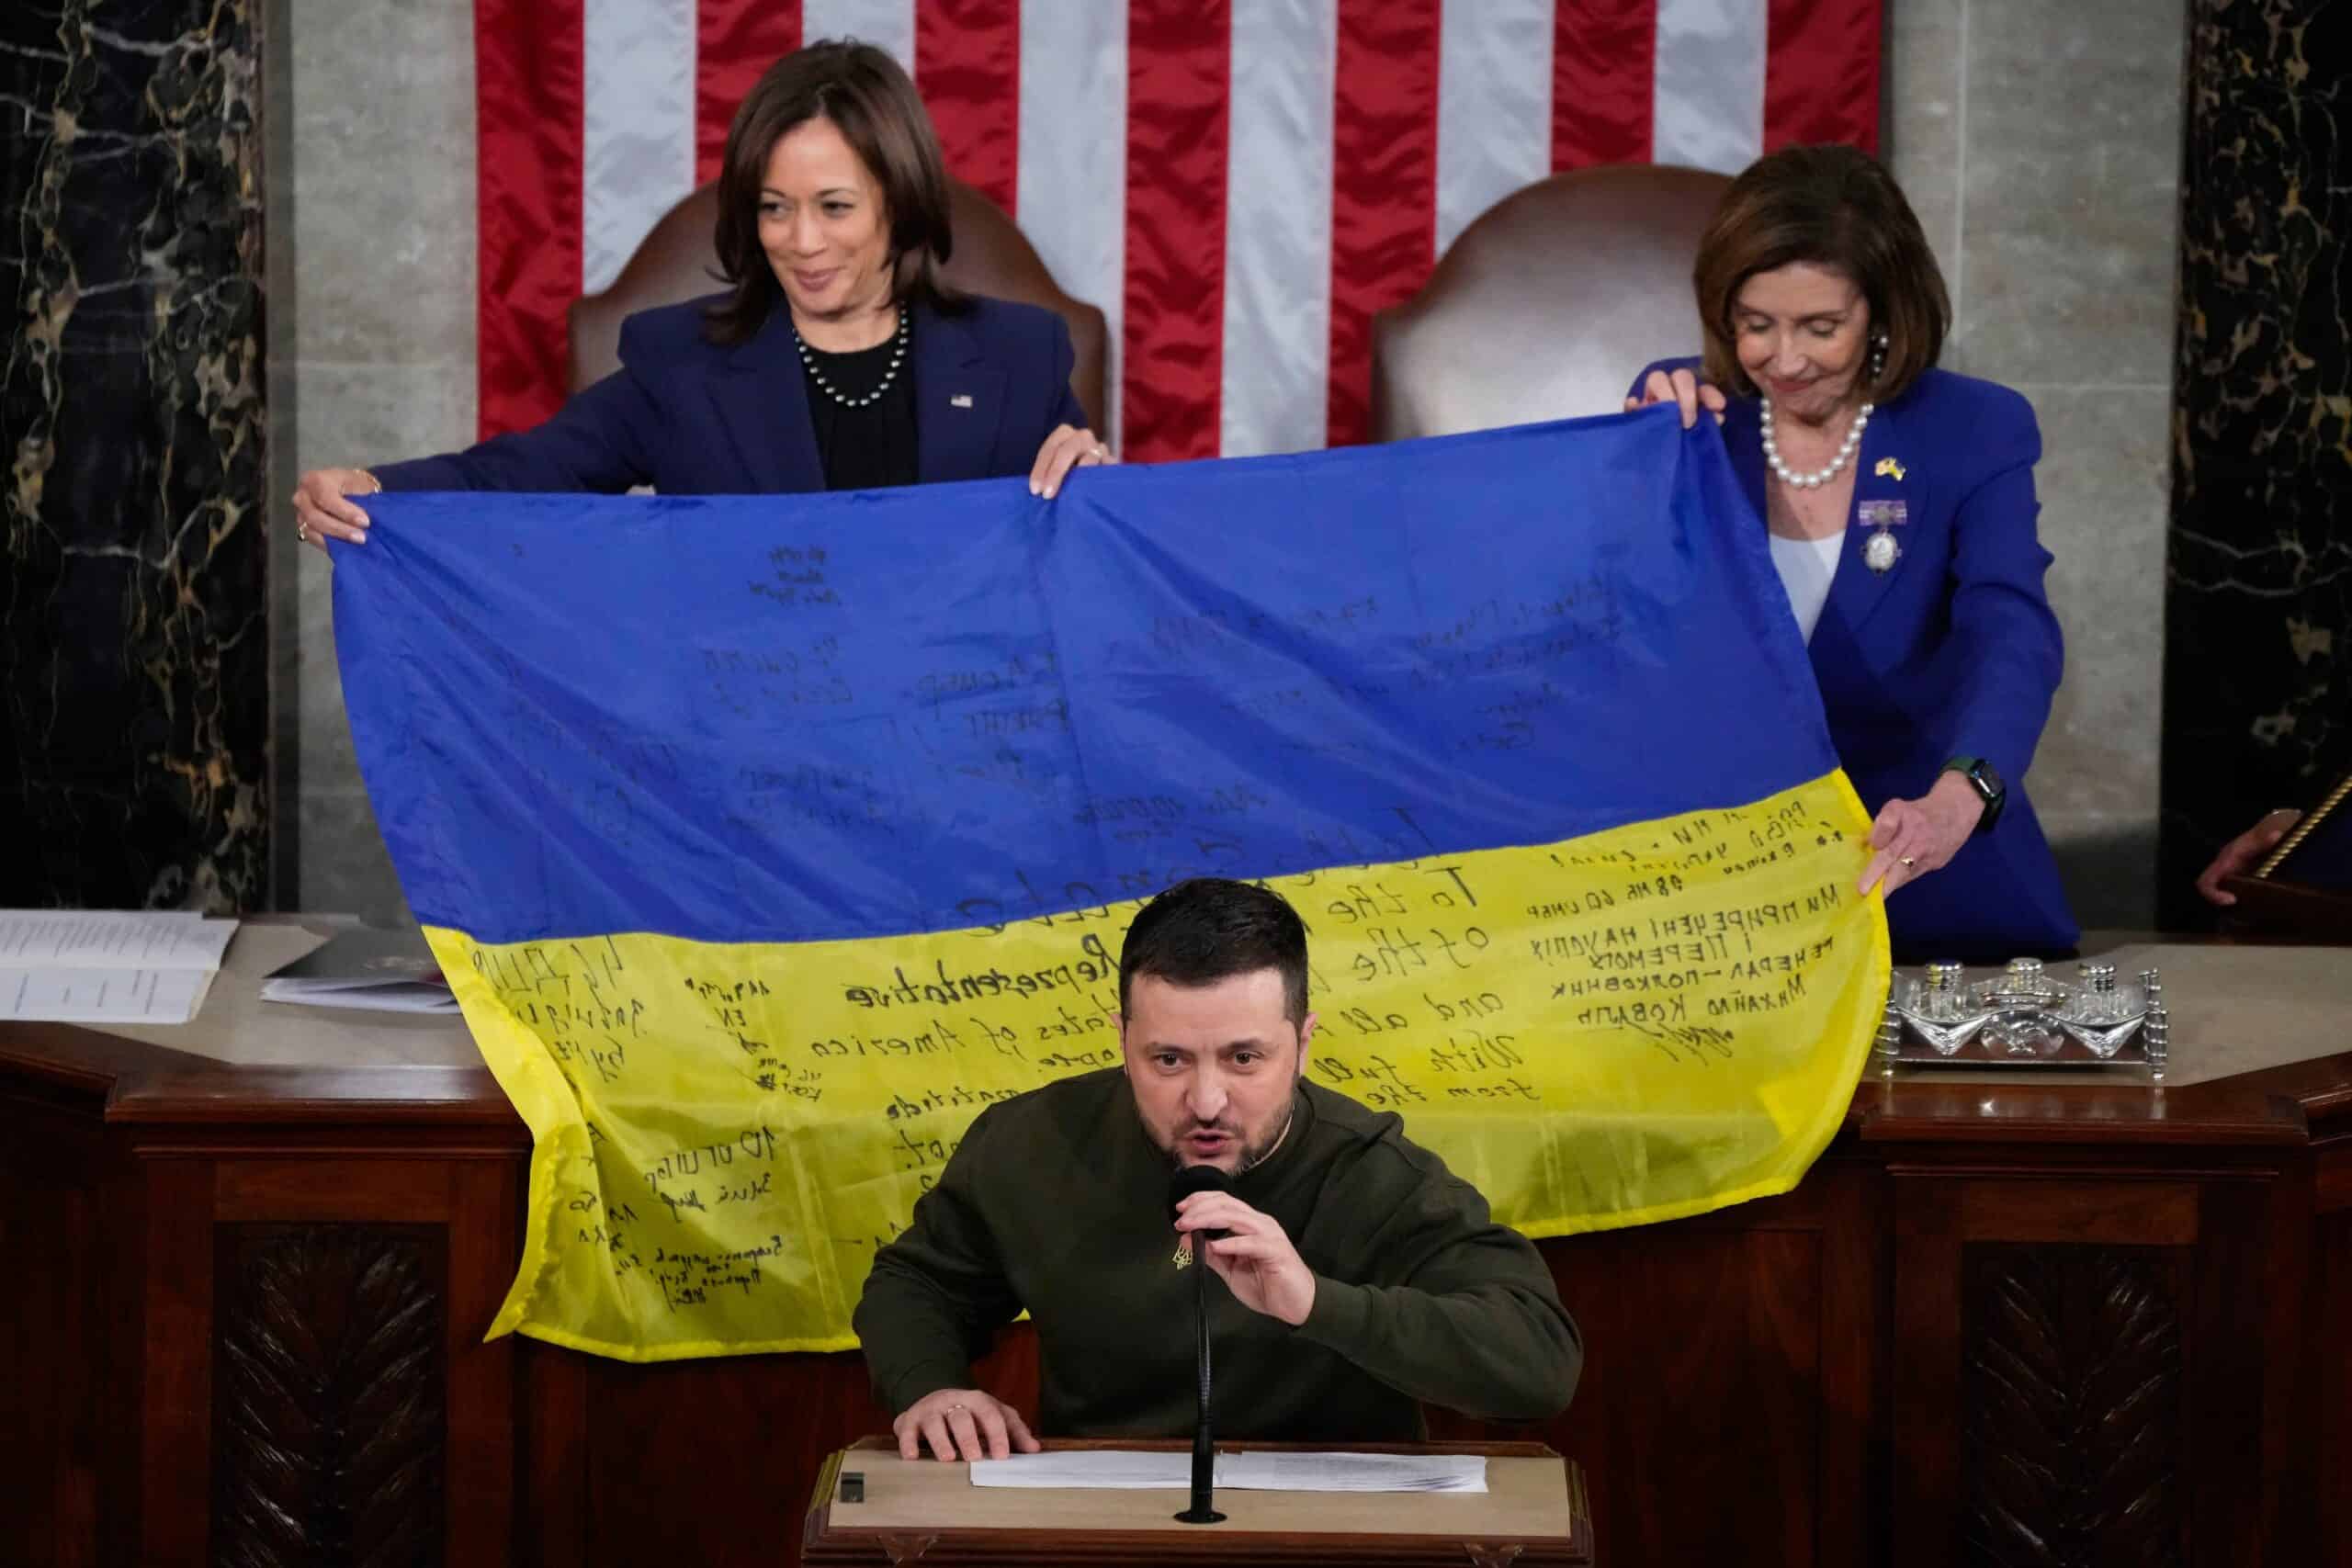 Volodymyr Zelensky receives thunderous applause for inspiring US Congress speech